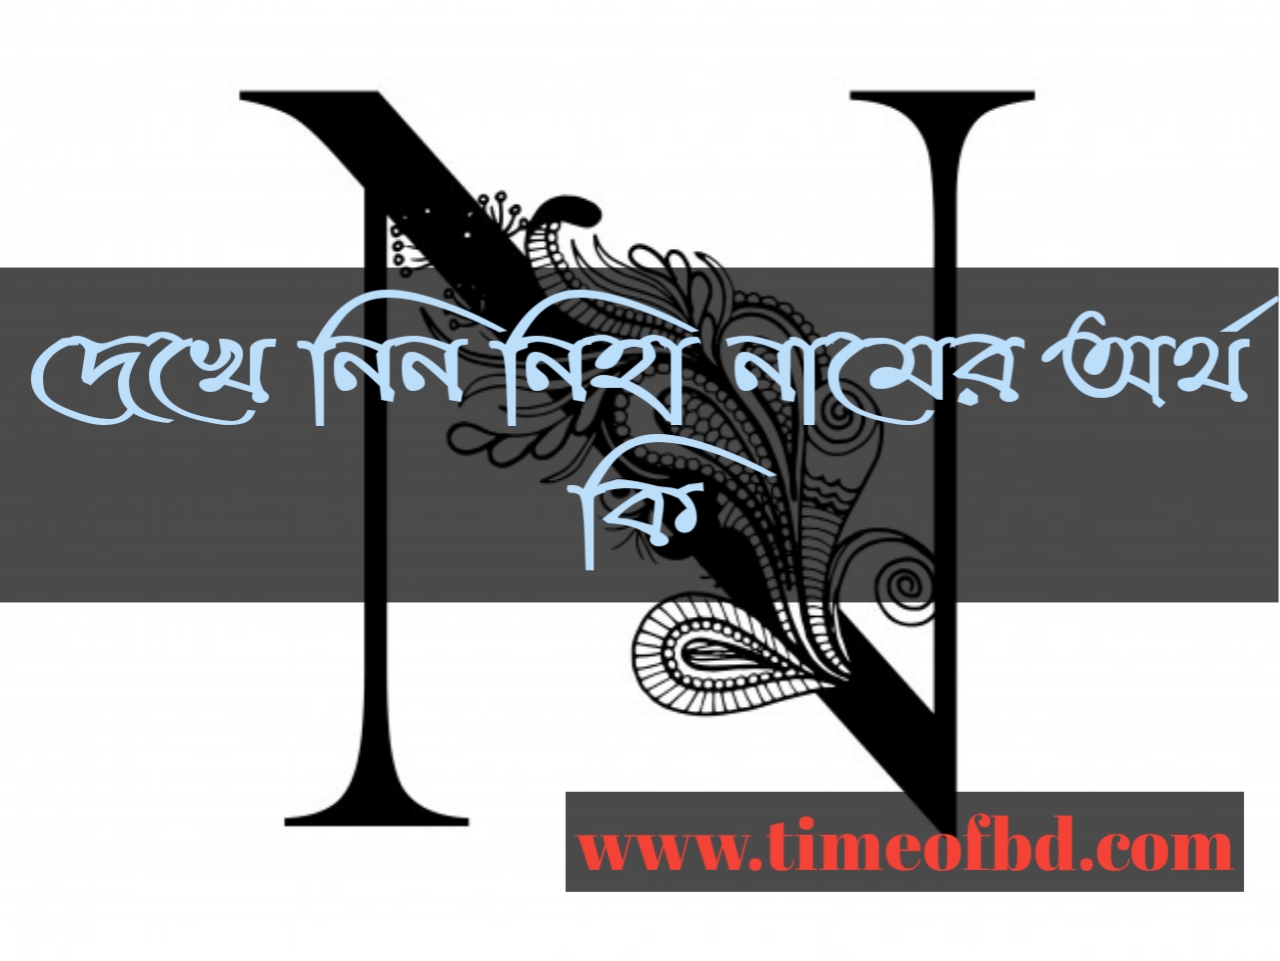 niha name meaning in Bengali, নিহা নামের অর্থ কি, নিহা নামের বাংলা অর্থ কি, নিহ নামের ইসলামিক অর্থ কি,